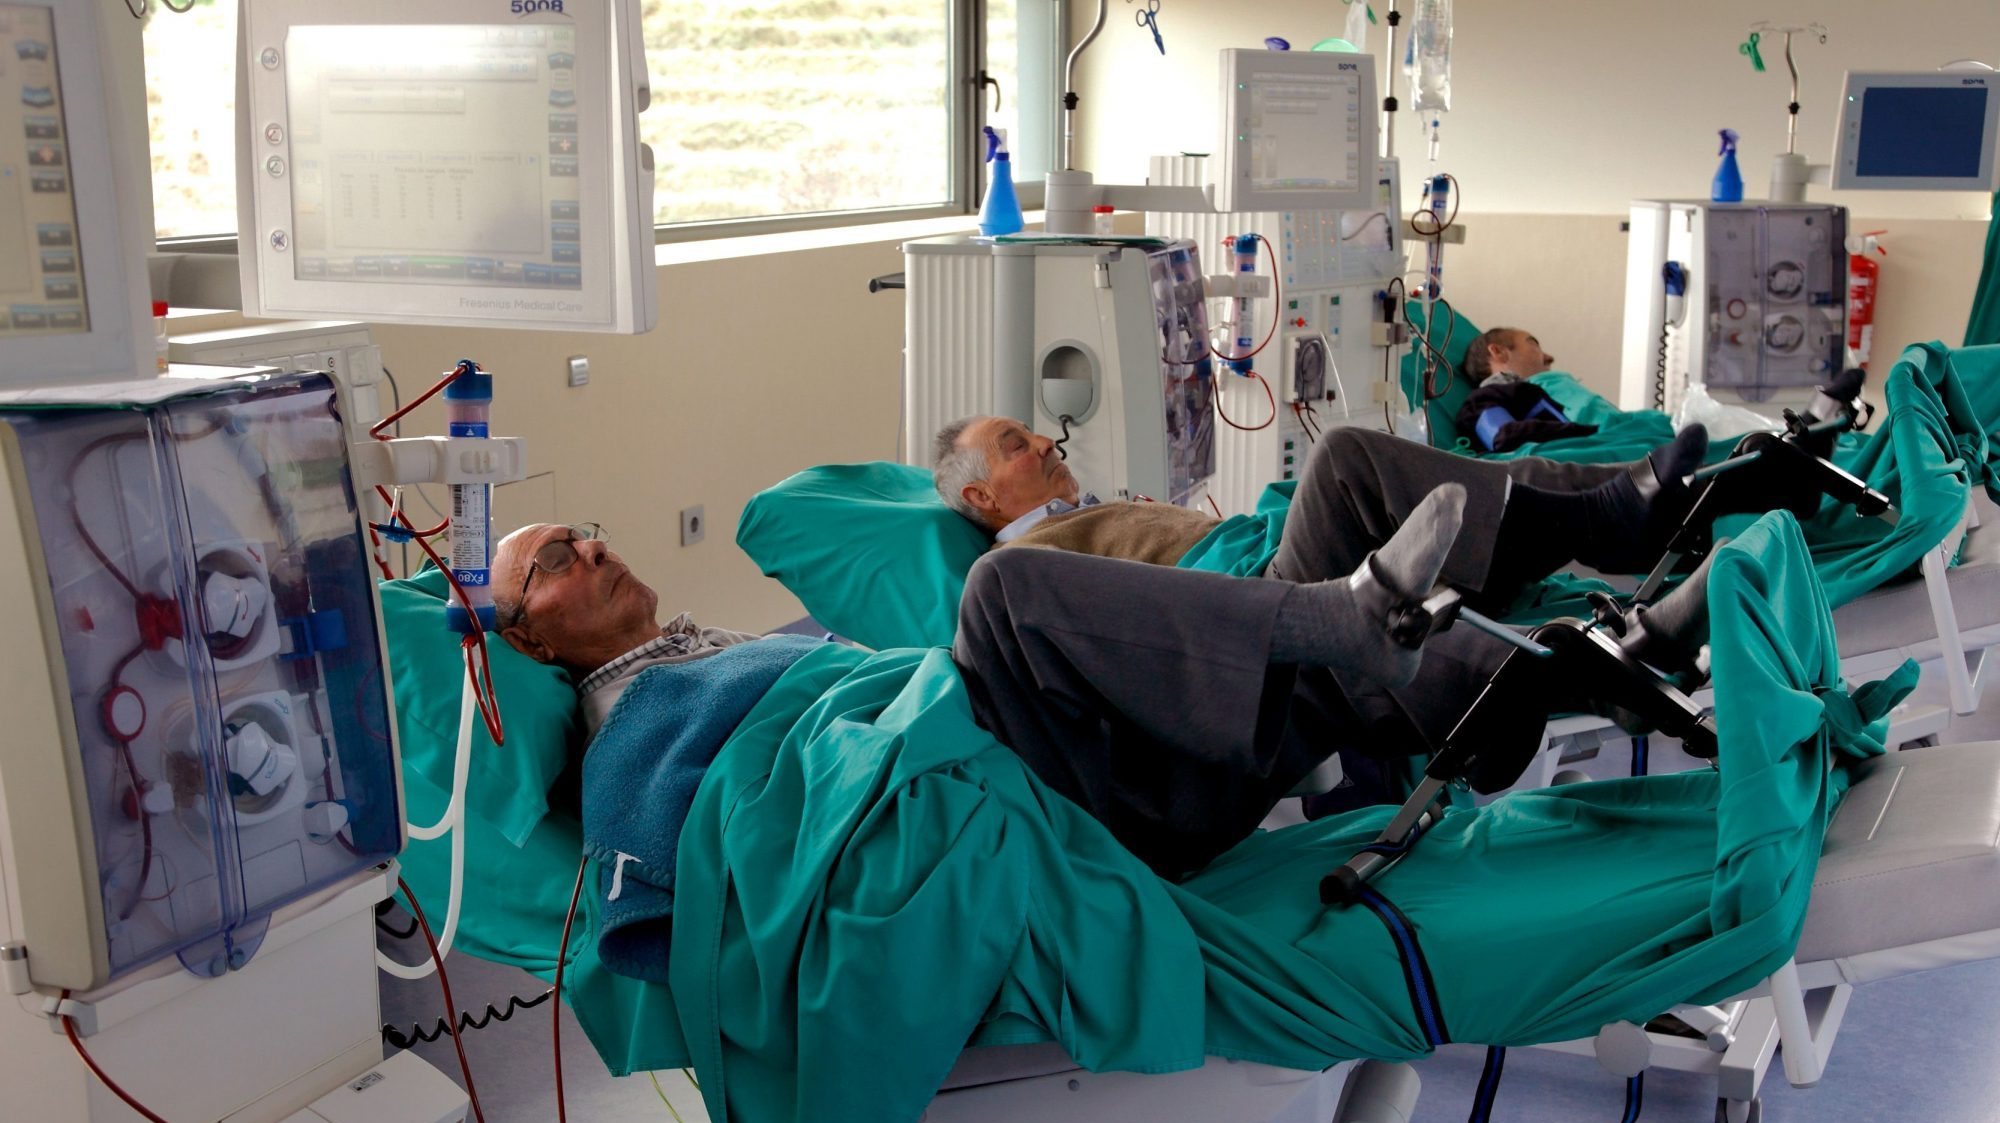 De acordo com o relatório da AdC, cerca de 81% das unidades de hemodiálise em Portugal continental eram detidas pelos quatro maiores operadores privados no setor